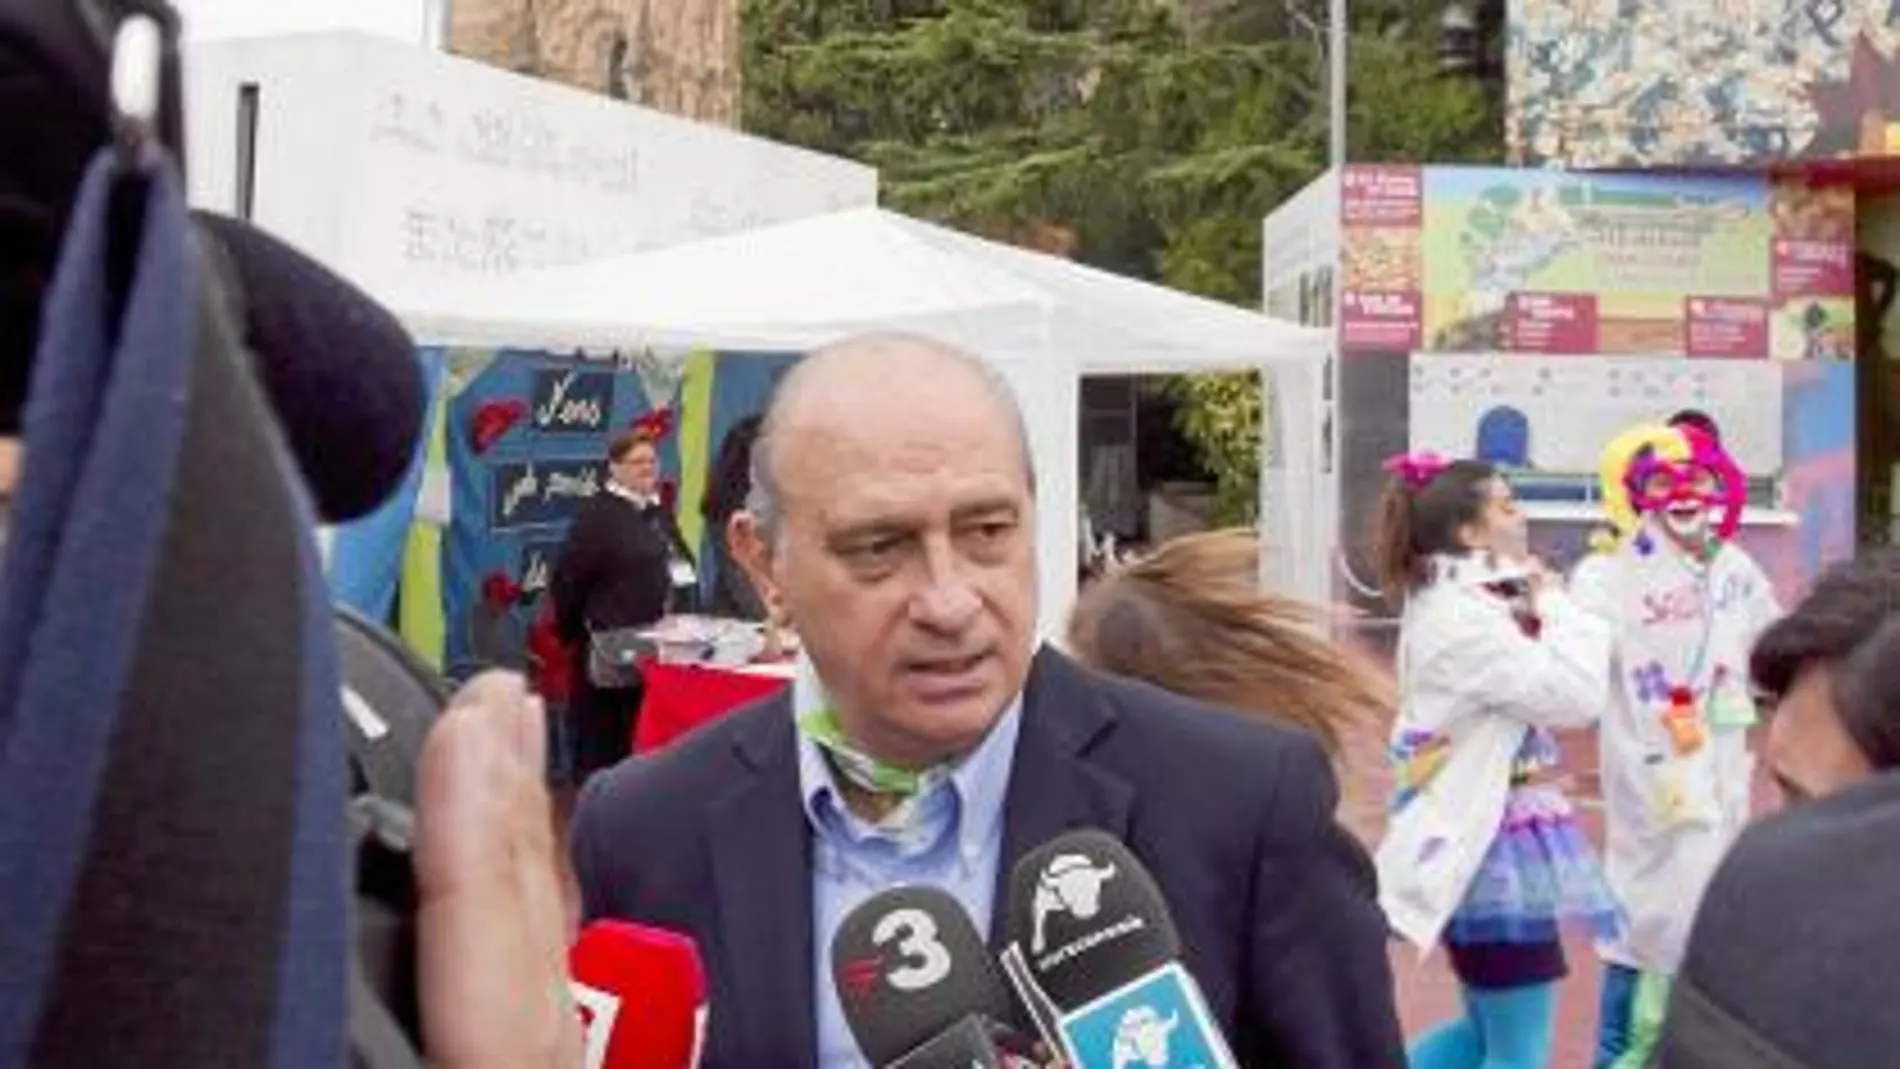 El candidato del PP acudió a la fiesta de la Asociación de Cariopatías Congénitas en el Tibidabo de Barcelona